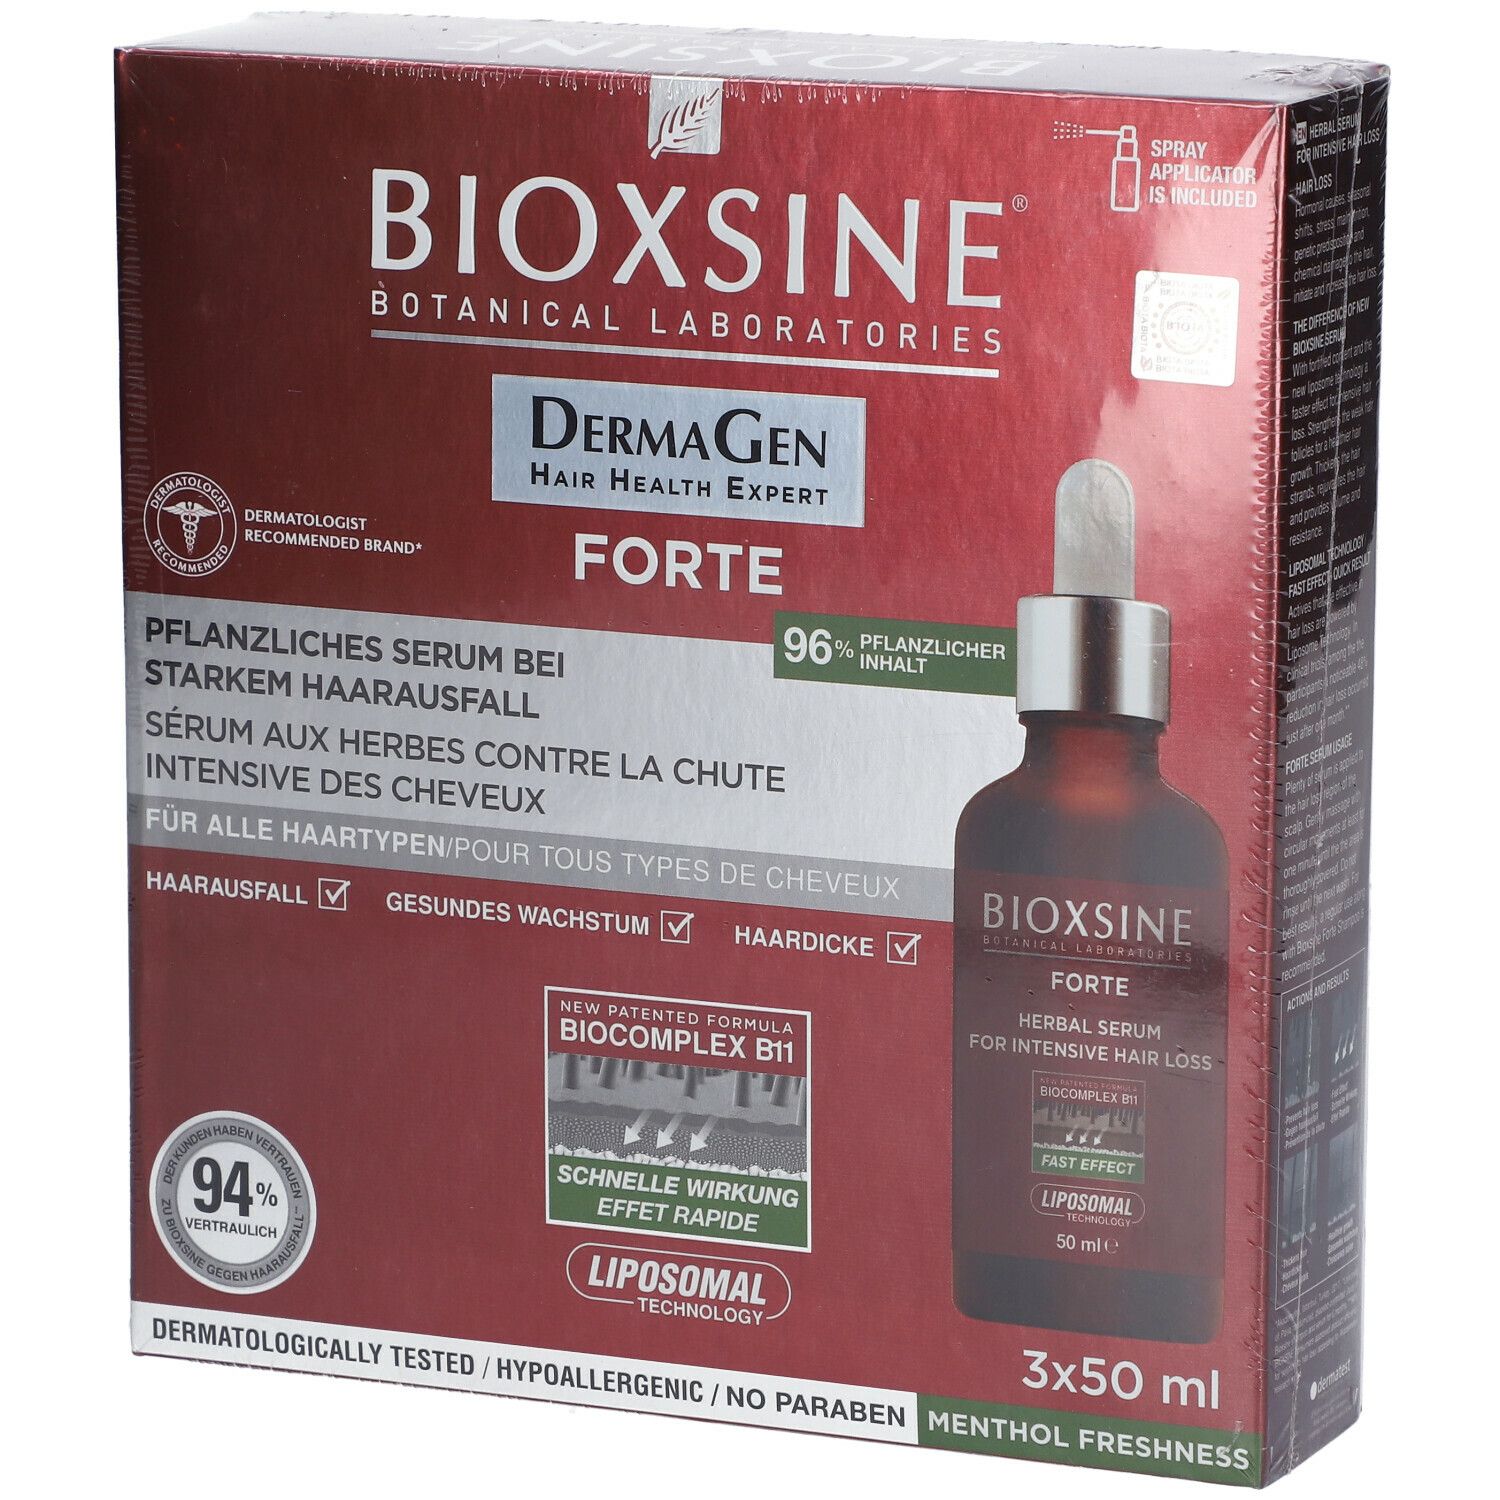 BIOXSINE® DermaGen FORTE